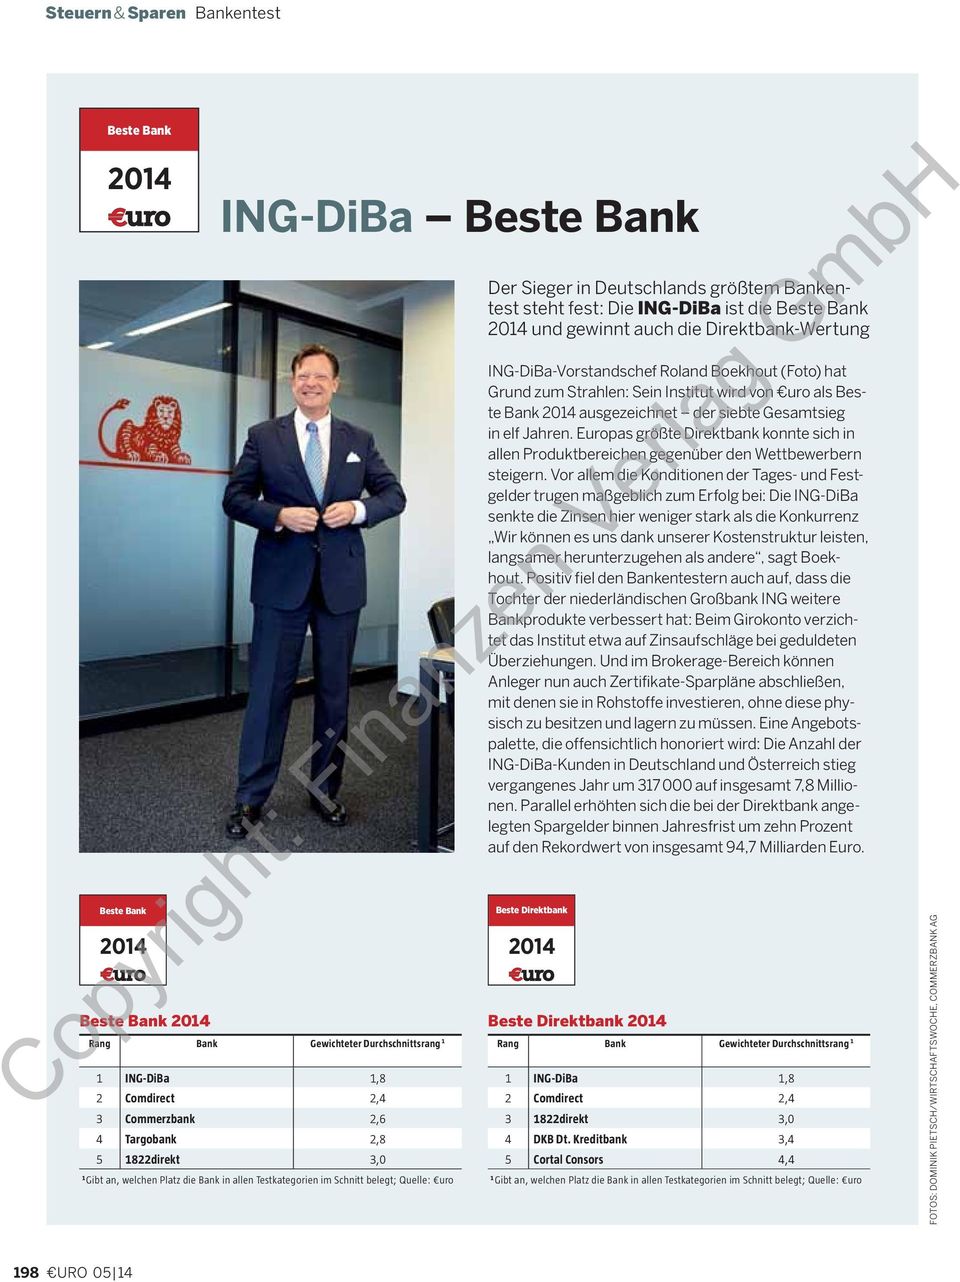 gewinnt auch die Direktbank-Wertung ING-DiBa-Vorstandschef Roland Boekhout (Foto) hat Grund zum Strahlen: Sein Institut wird von uro als Beste Bank ausgezeichnet der siebte Gesamtsieg in elf Jahren.